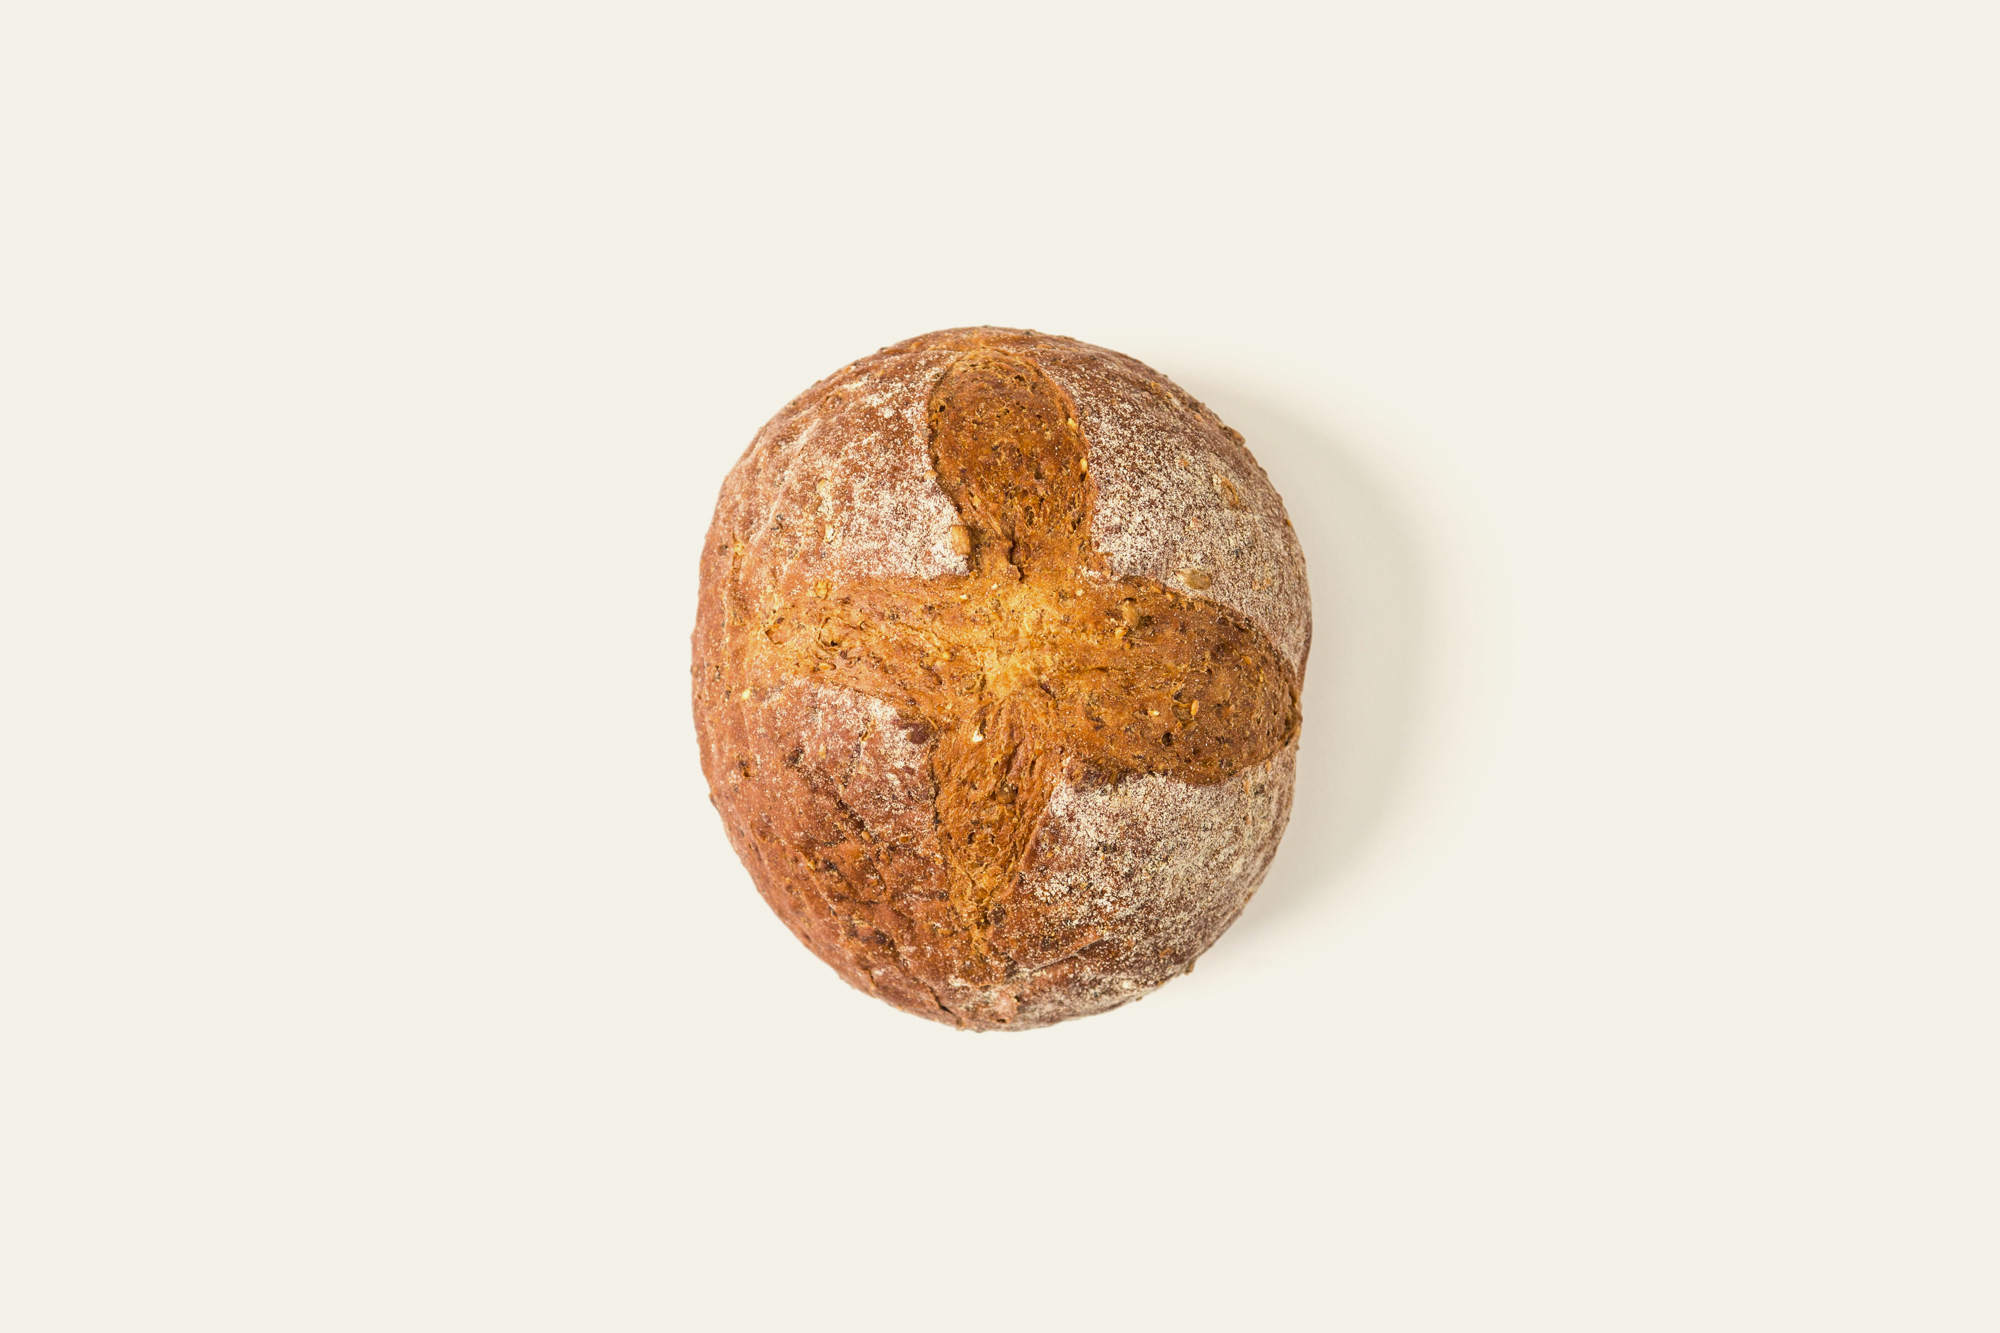 Pane impastato con farina di farro, dal sapore robusto e rustico.